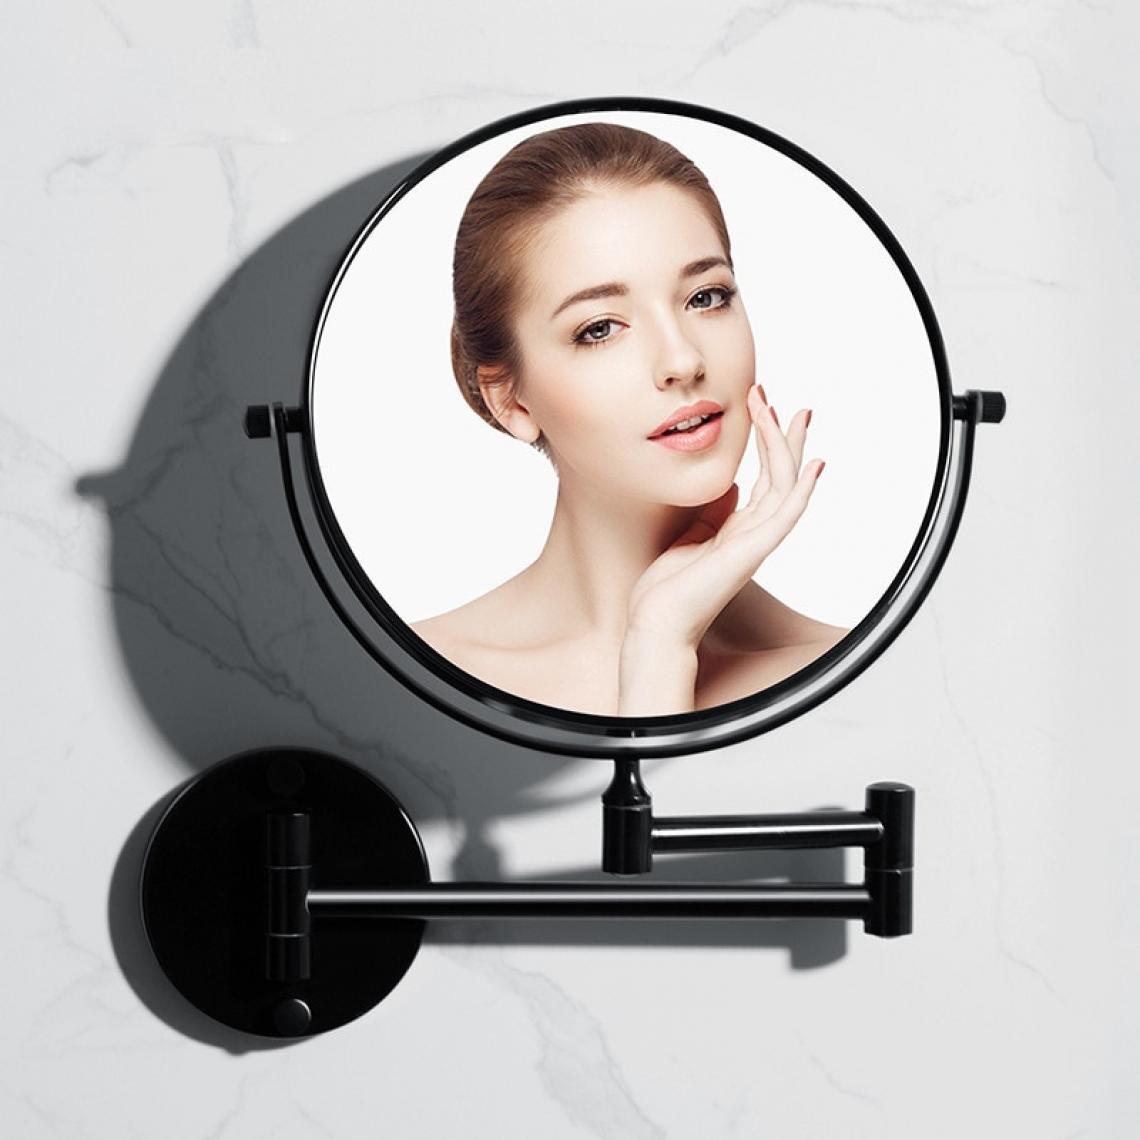 Universal - Salle de bains installation murale miroir miroir maquillage miroir maquillage salle de bains noir miroir beauté loupe pliante sans perçage installation |(Le noir) - Miroir de salle de bain